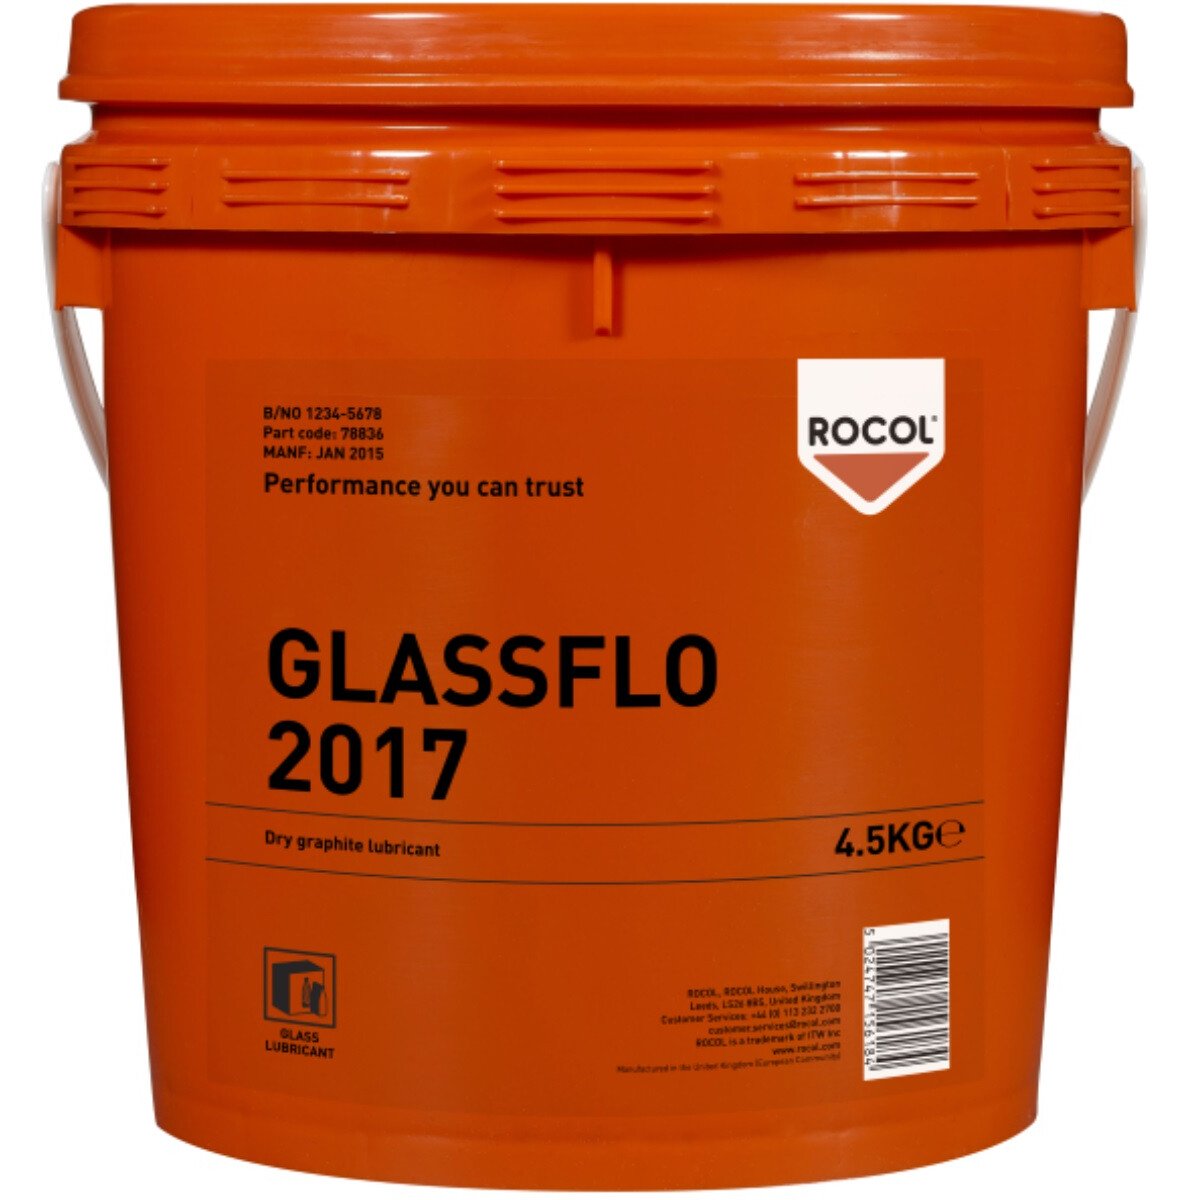 Rocol 78836 Glassflo 2017 - Dry Graphite Lubricant 4.5kg